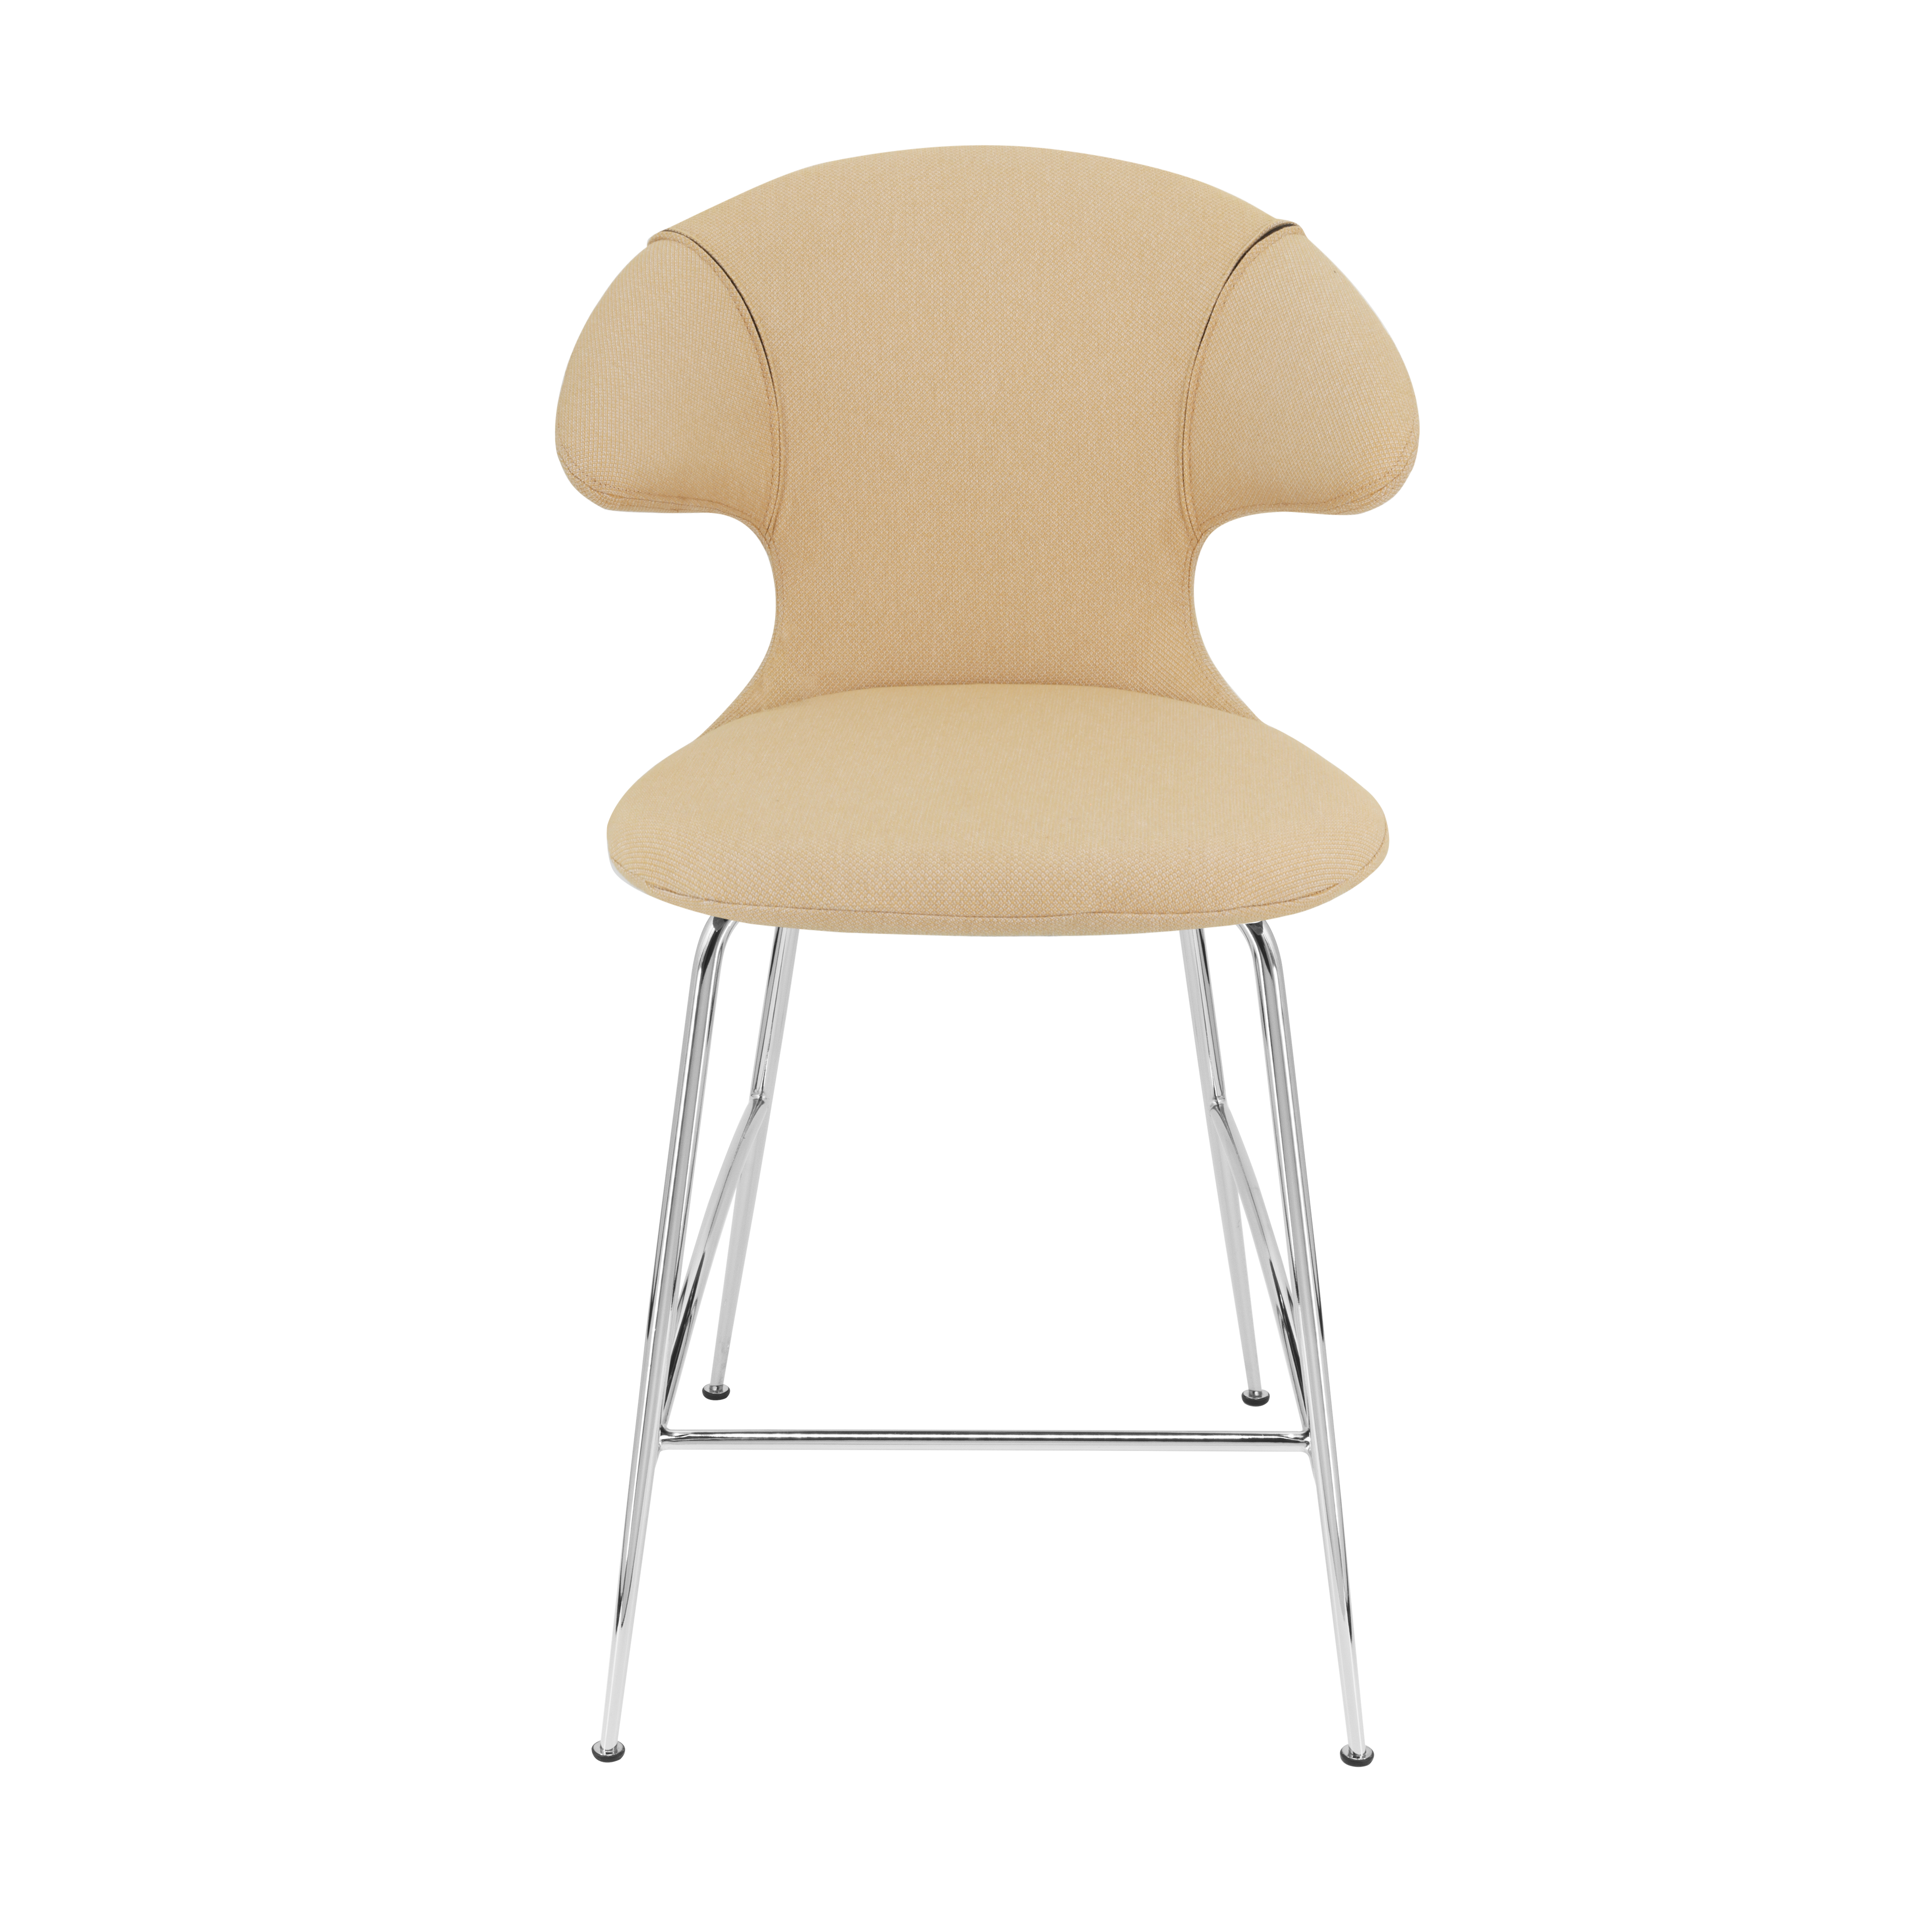 Time Flies Counter Stuhl in Summer Shine präsentiert im Onlineshop von KAQTU Design AG. Barstuhl mit Armlehne ist von Umage